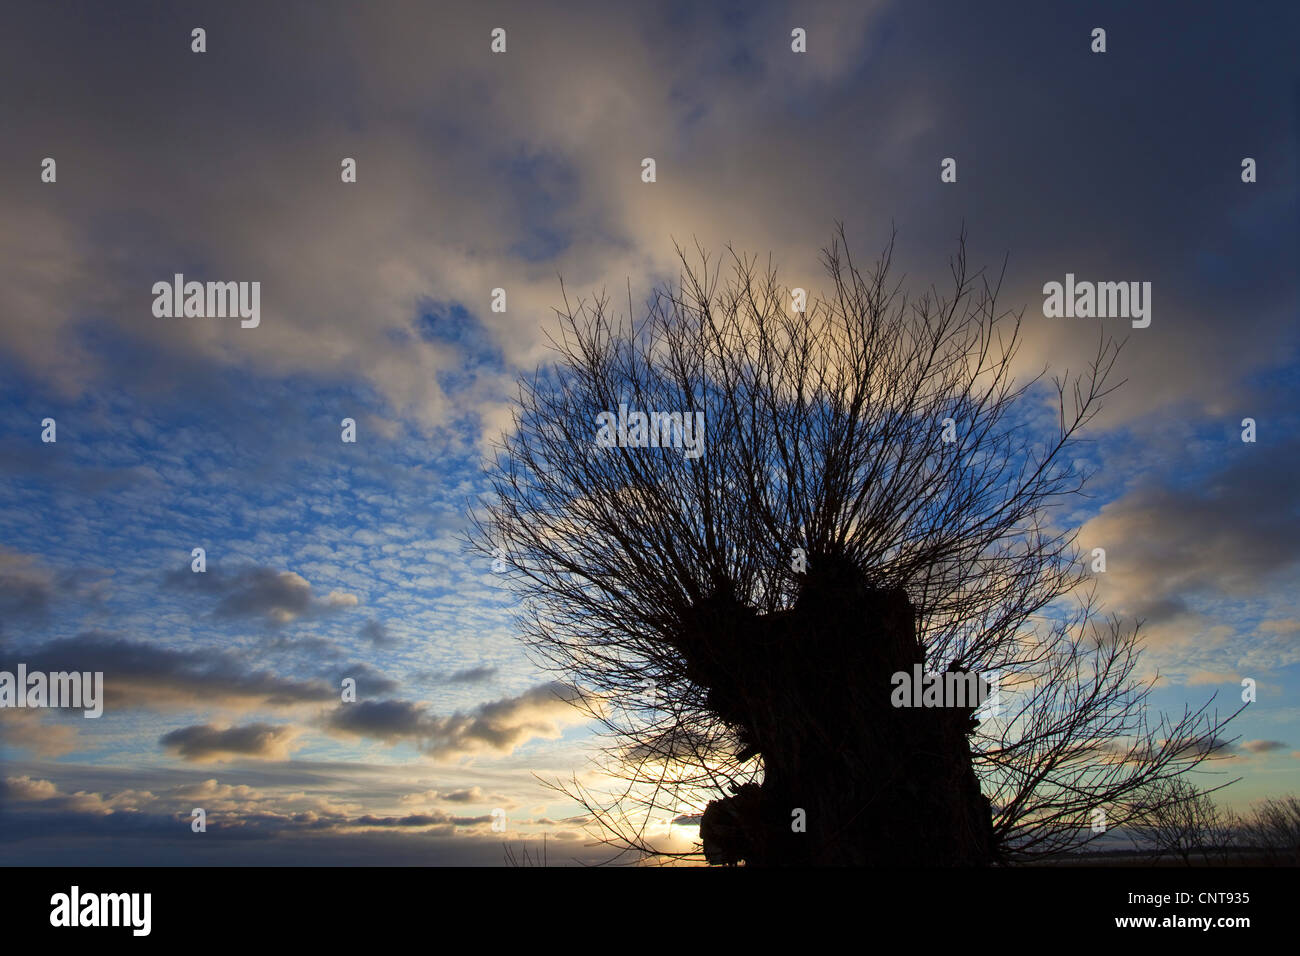 Baum-Silhouette vor einem wolkigen Himmel bei Sonnenaufgang, Deutschland, Mecklenburg-Vorpommern, Wustrow bin Bodden Stockfoto